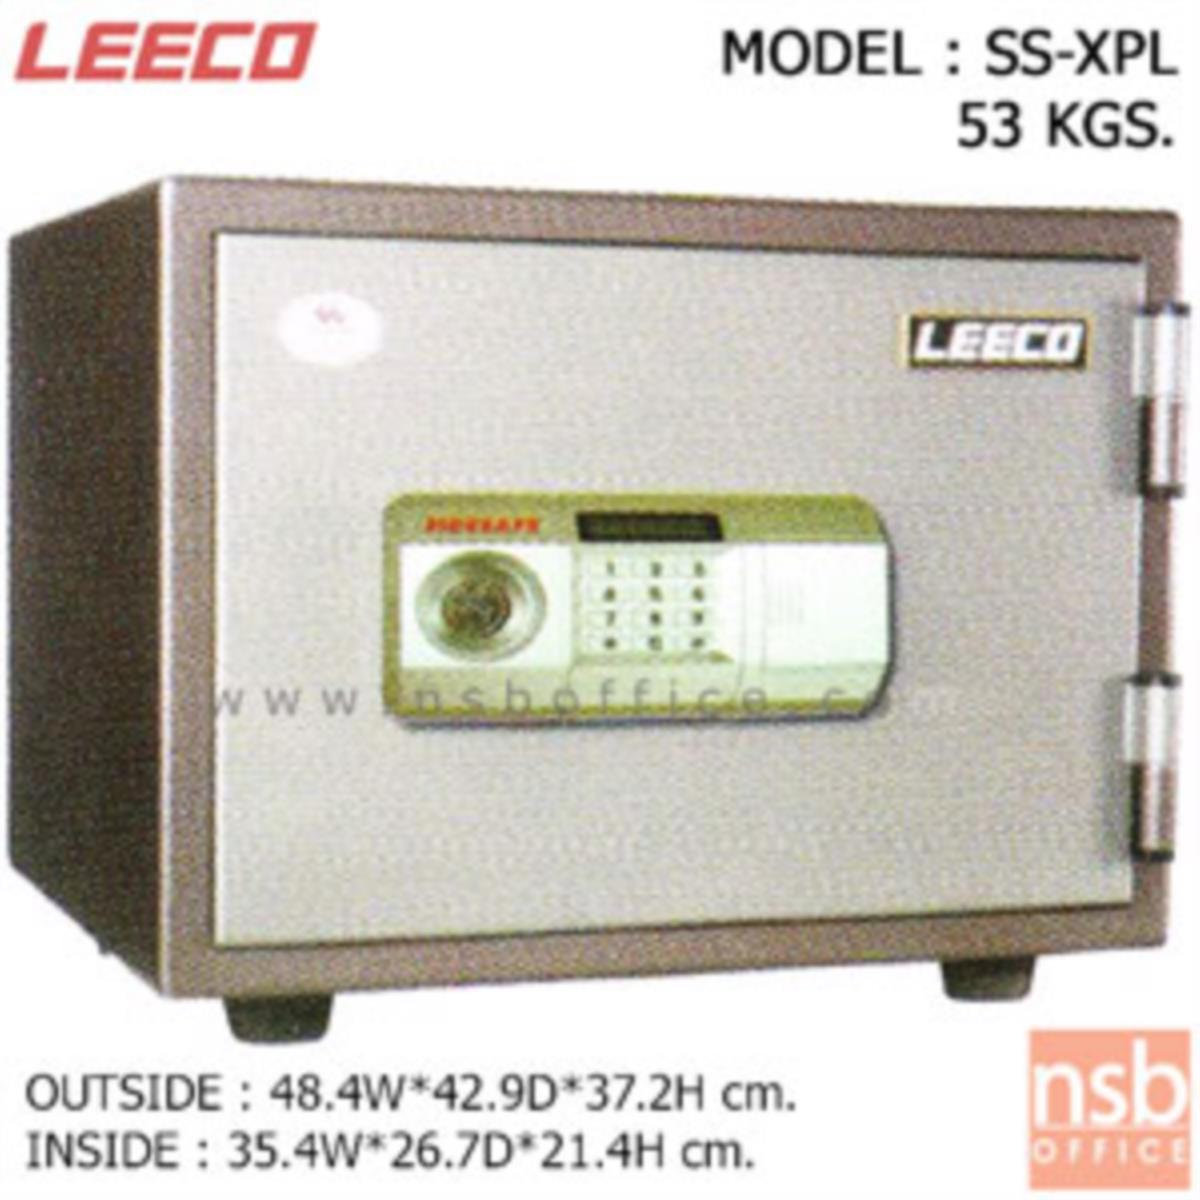 ตู้เซฟดิจิตอล 53 กก. (1 รหัสกด / 1 ปุ่มหมุนบิด) LEECO SS-XPL   